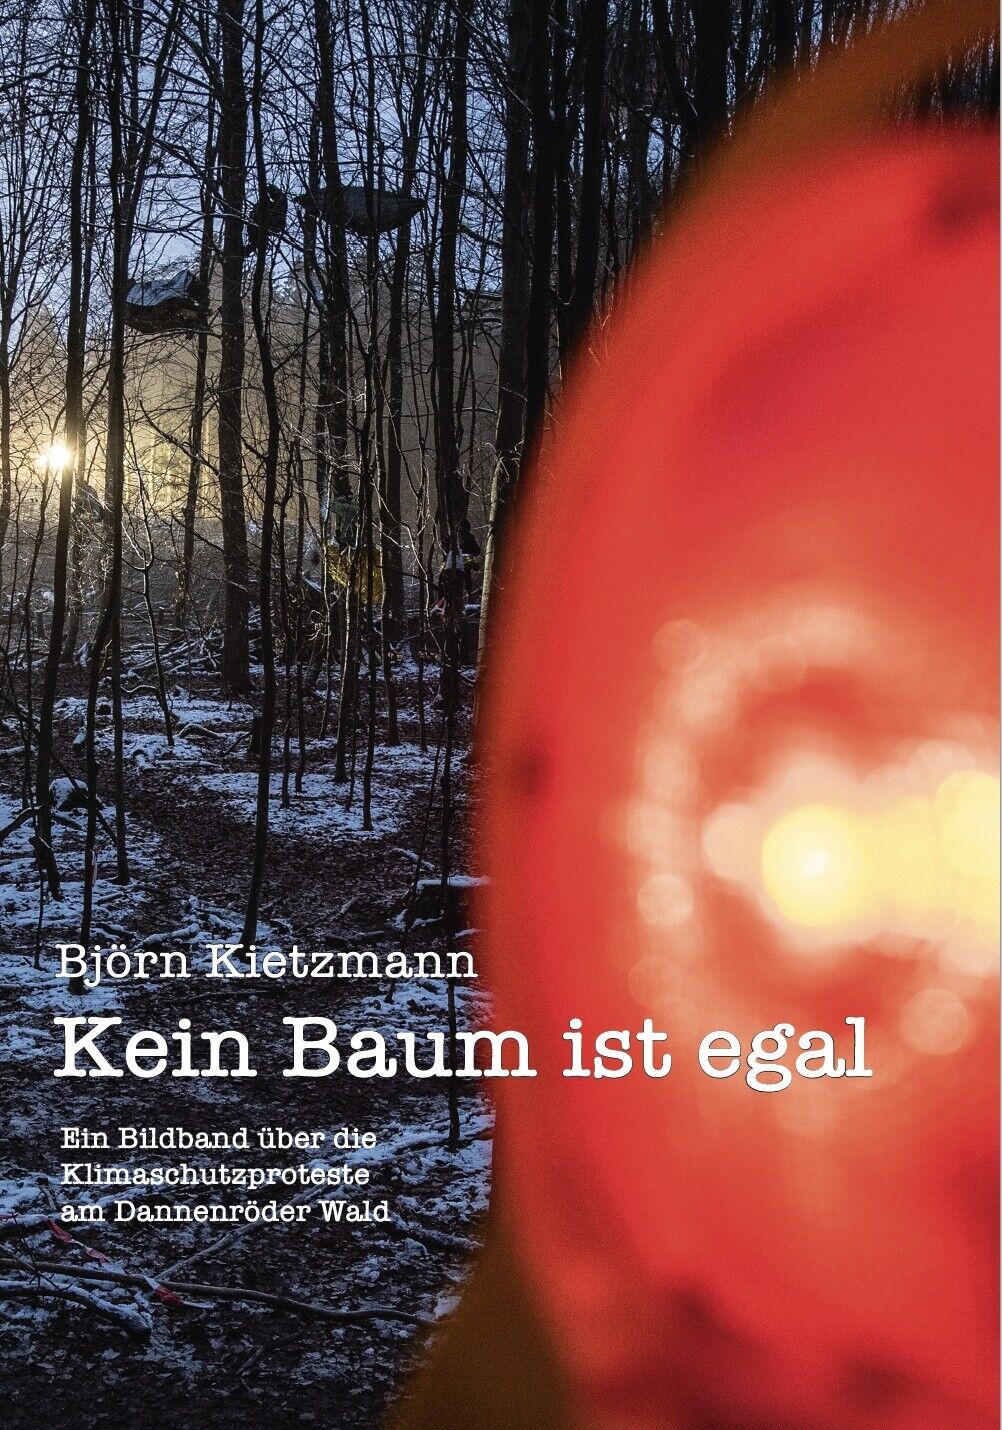 Kein Baum ist egal - Bildband über die Dannenröder Wald Proteste (Taschenbuch) - Björn Kietzmann, Carola Rackete